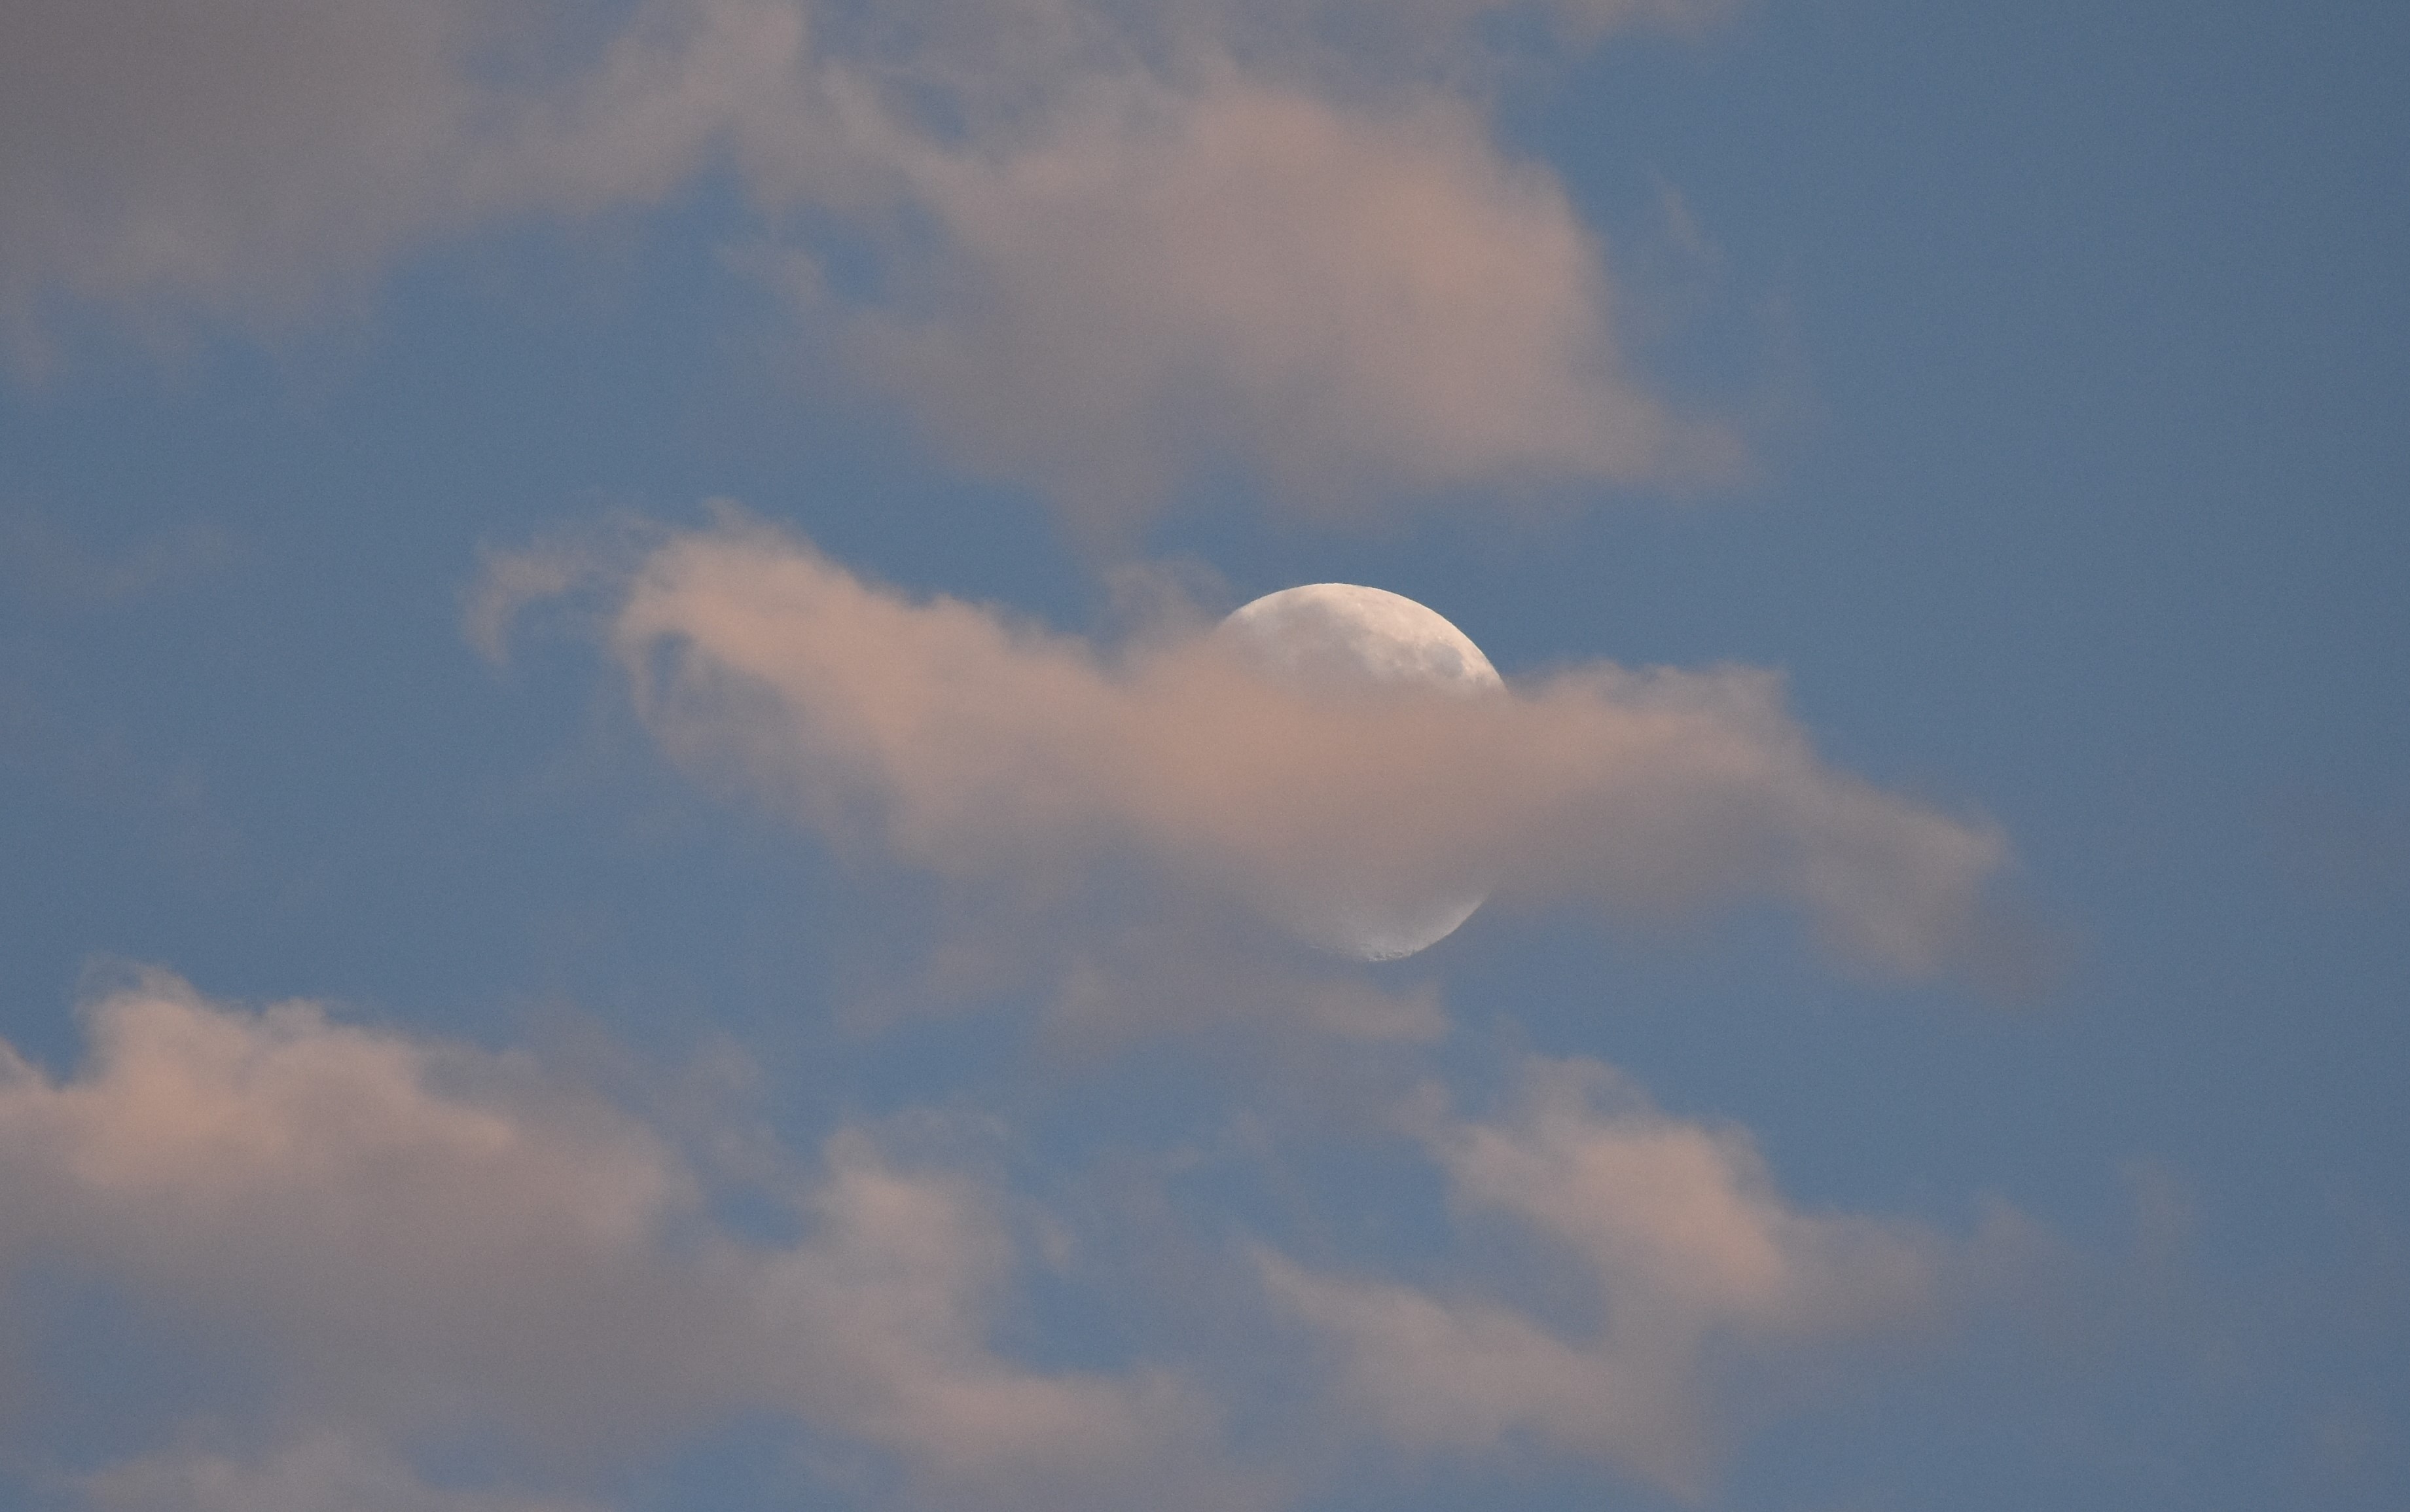 Clouds behind moon.